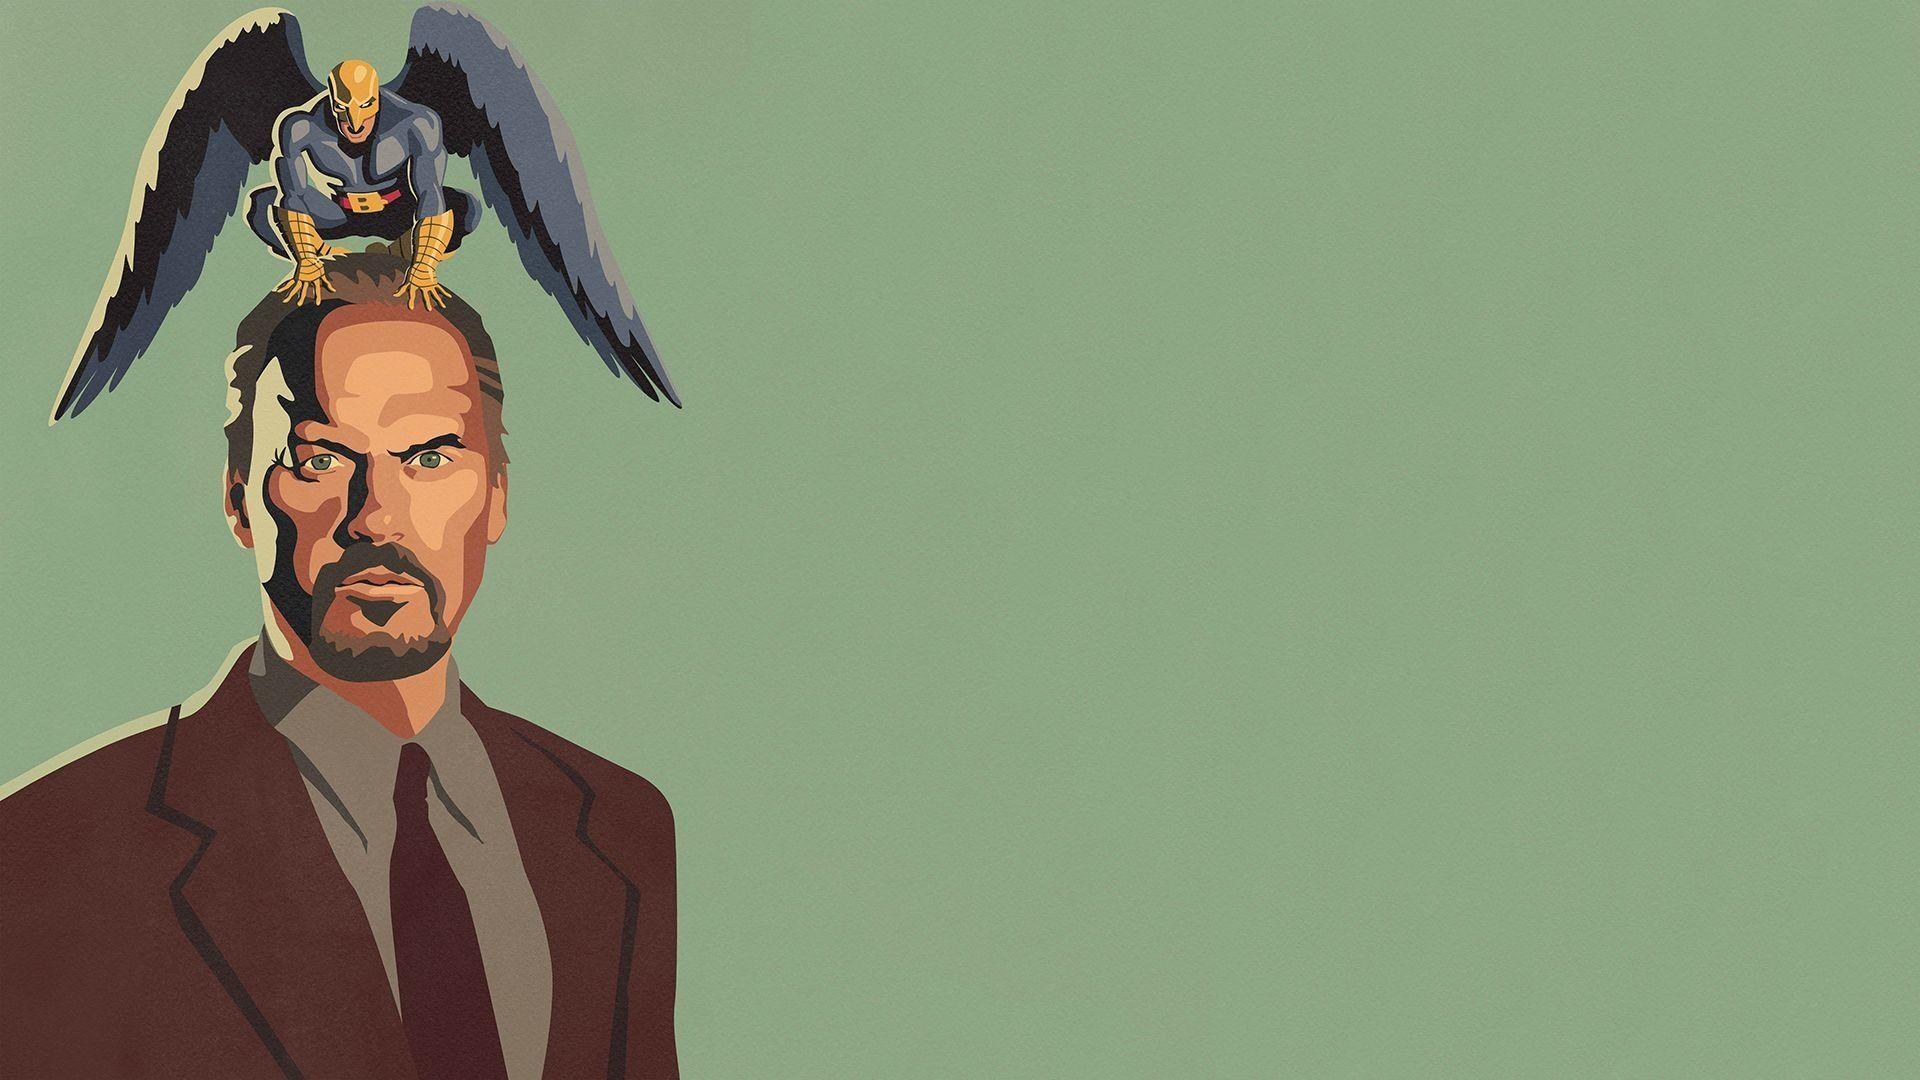 Birdman Wallpapers - Top Free Birdman Backgrounds ...